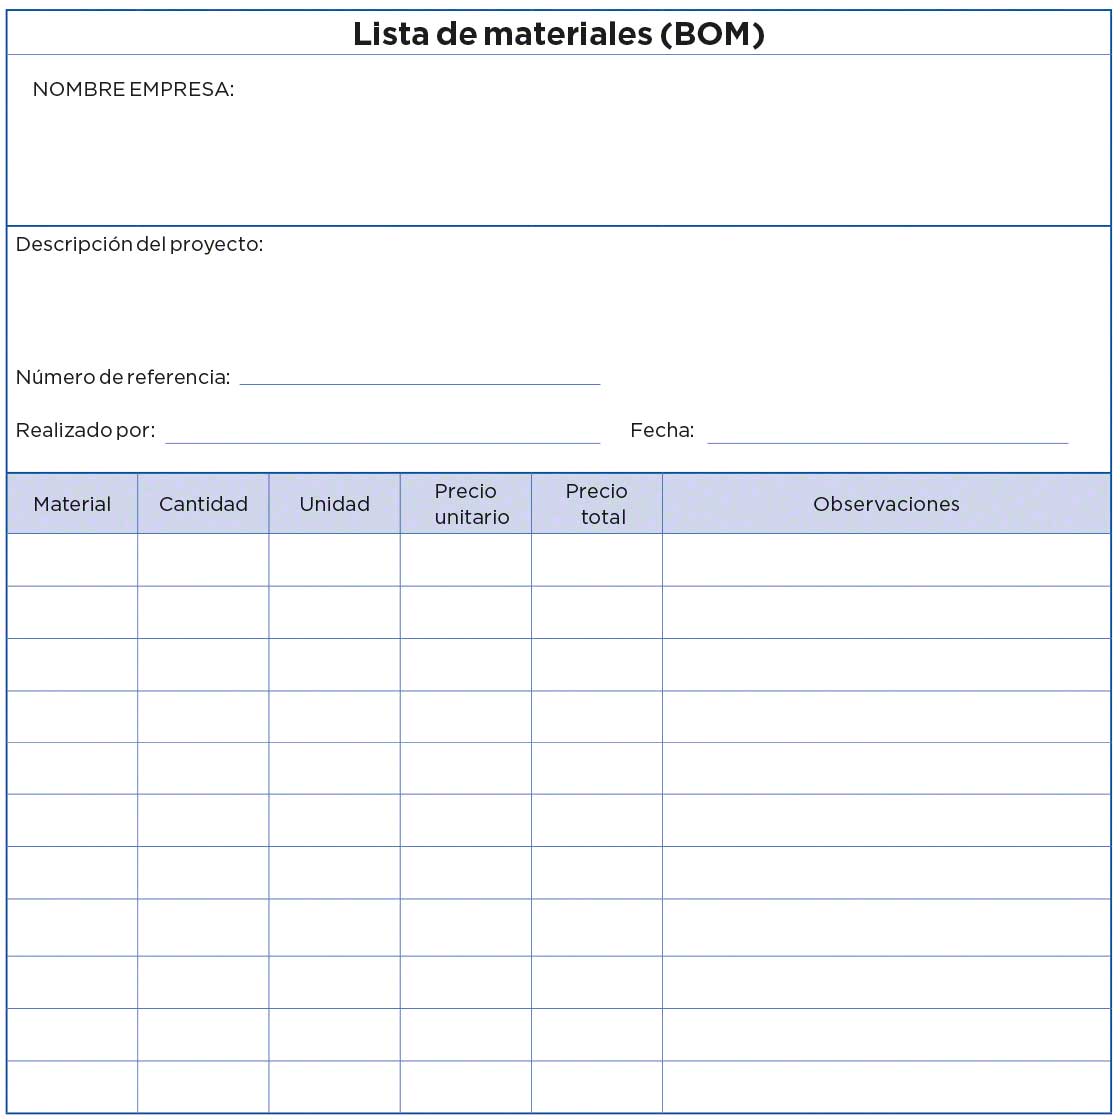 Este documento es un ejemplo que muestra algunos de los elementos que contiene una lista de materiales (BOM)